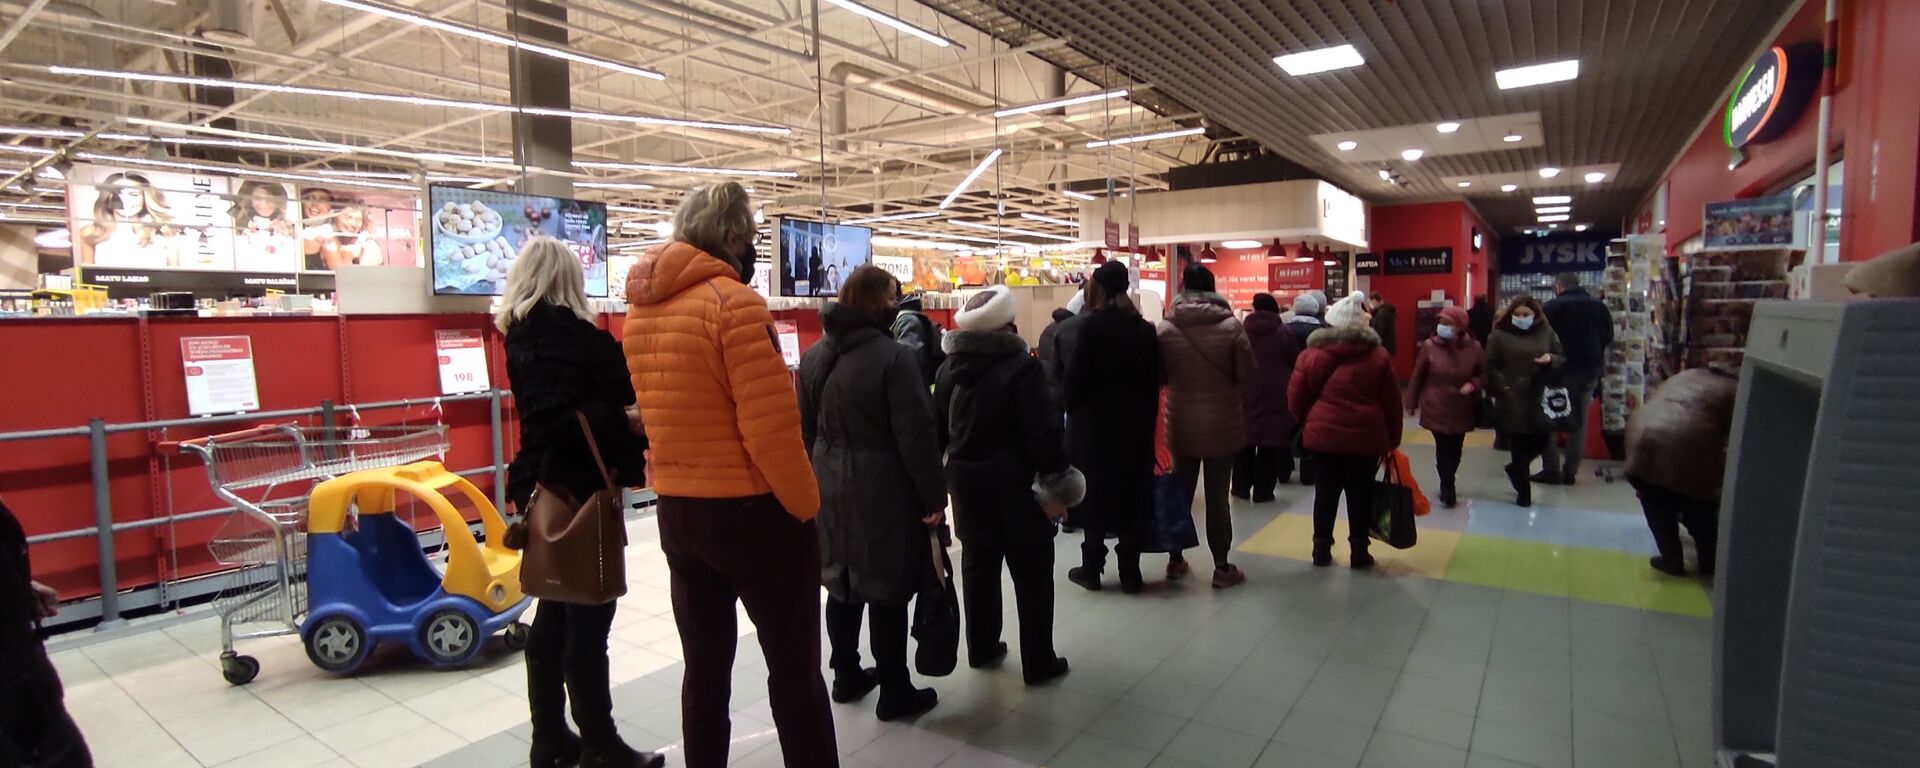 Очередь на вход в торговый зал супермаркета Rimi в Риге - Sputnik Латвия, 1920, 22.02.2021